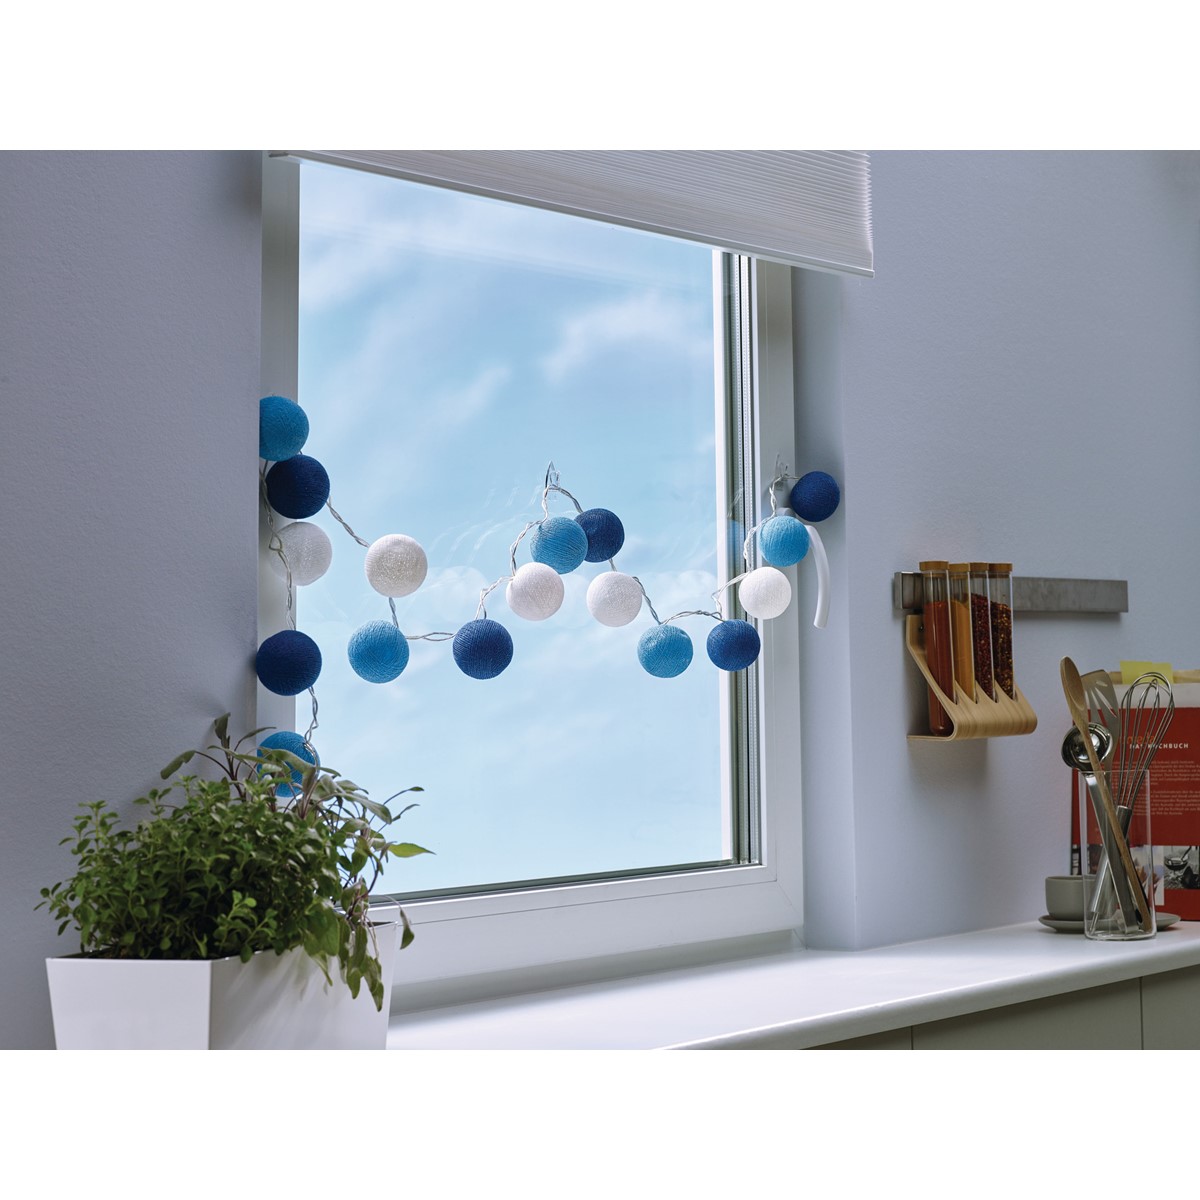 tesa 77731-00000 - Doppelseitige Klebepads für transparente Oberflächen und  Glas, 60 Pads